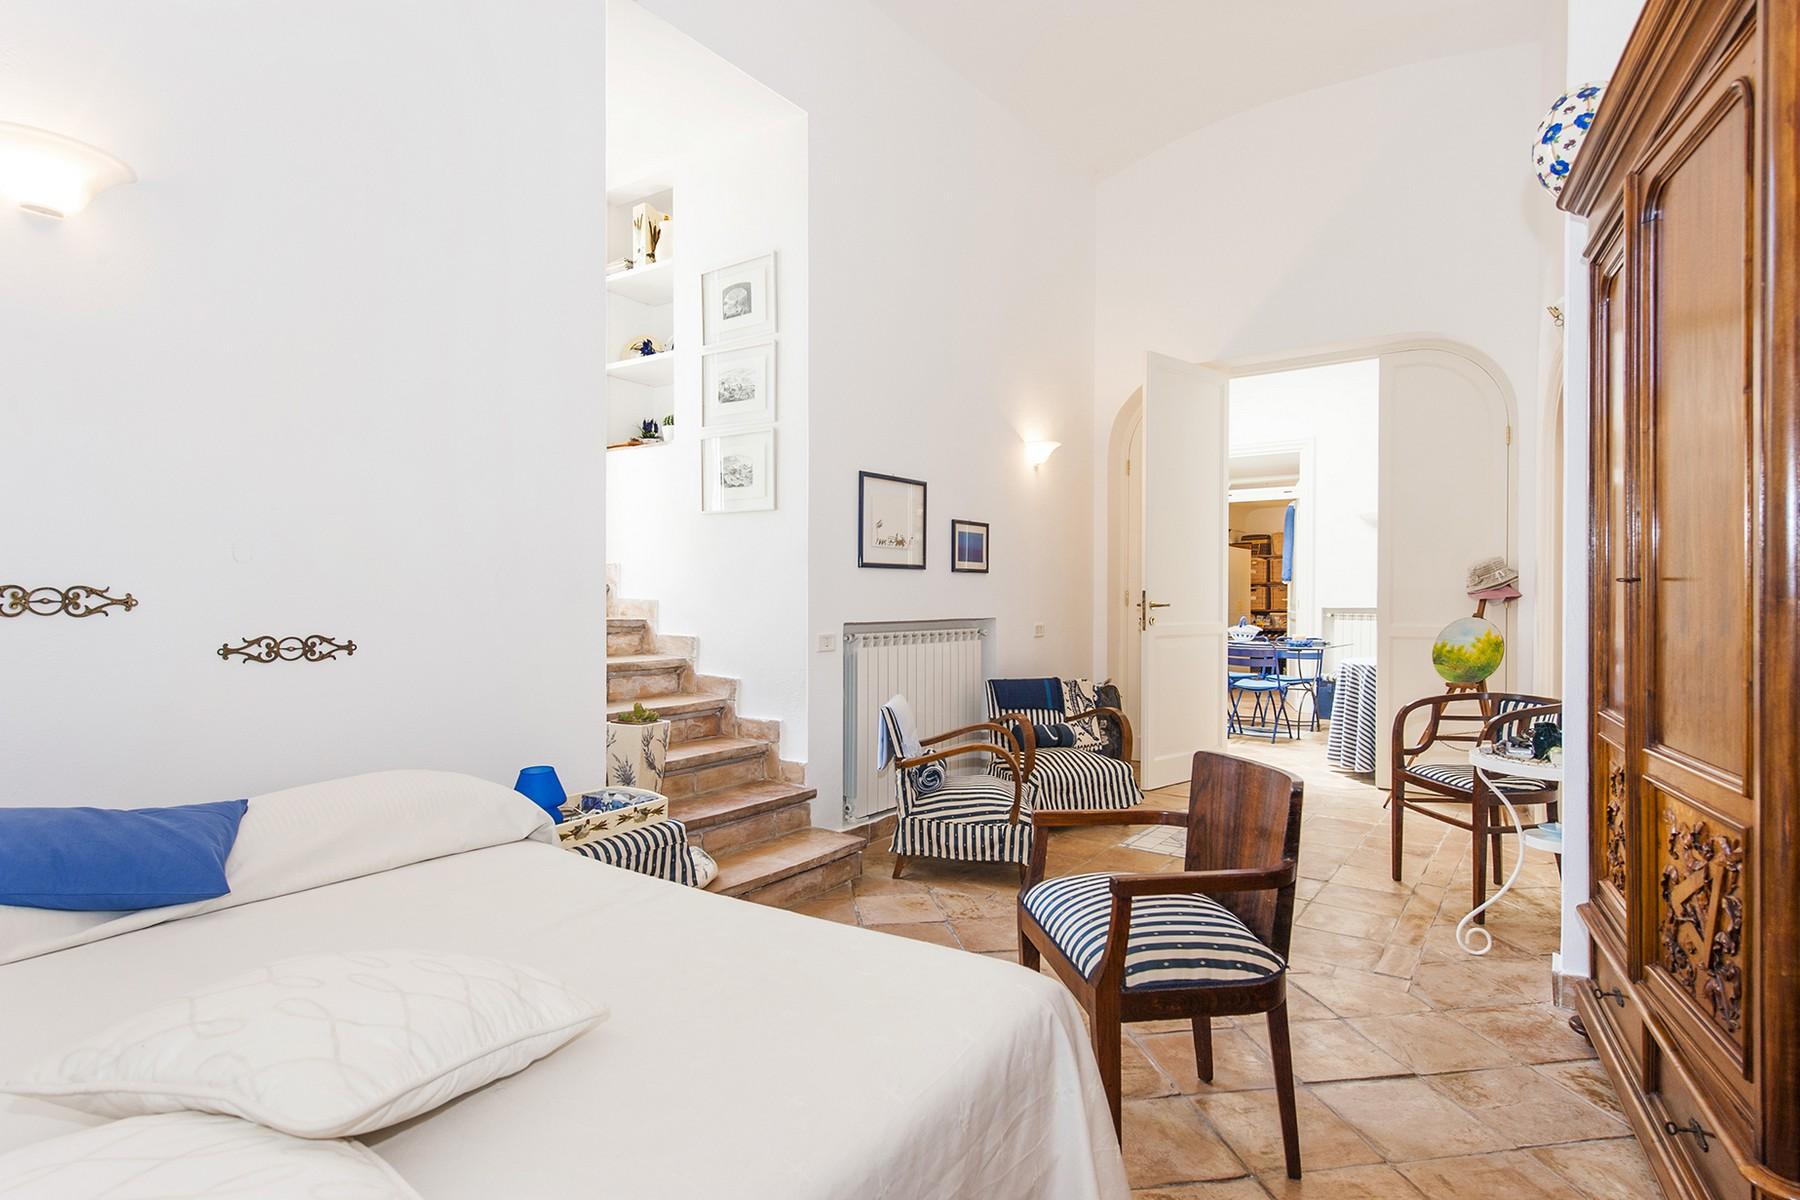 坐落于Ventotene海岛具有地中海风情的别墅 - 11